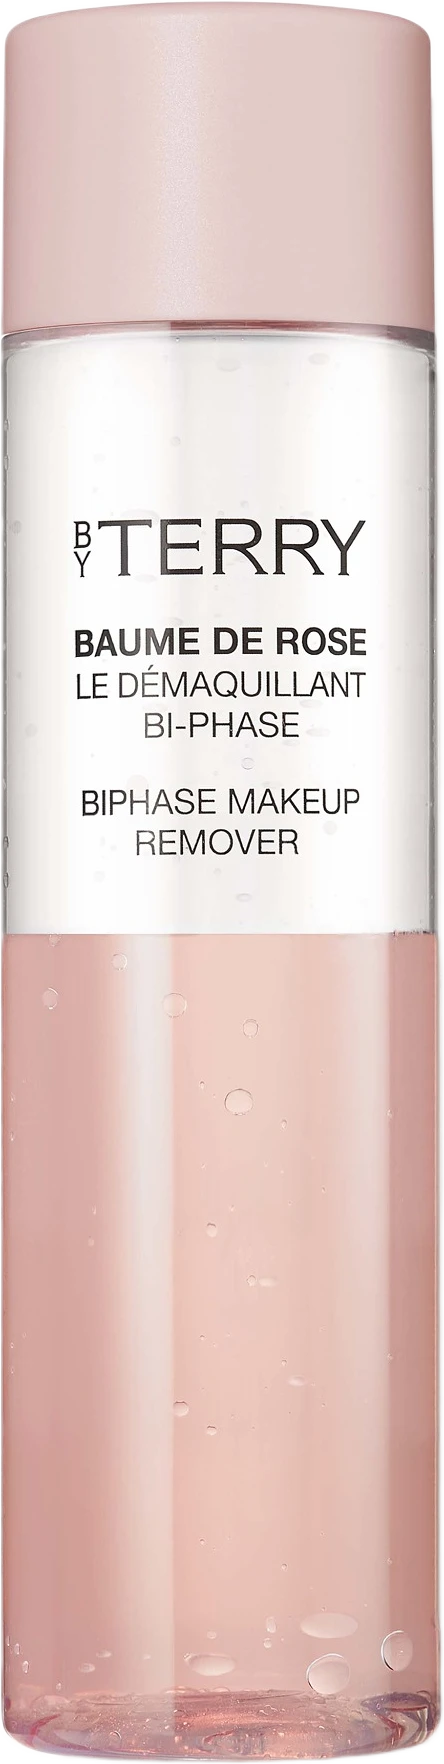 Baume De Rose Bi-Phase Make-Up Remover